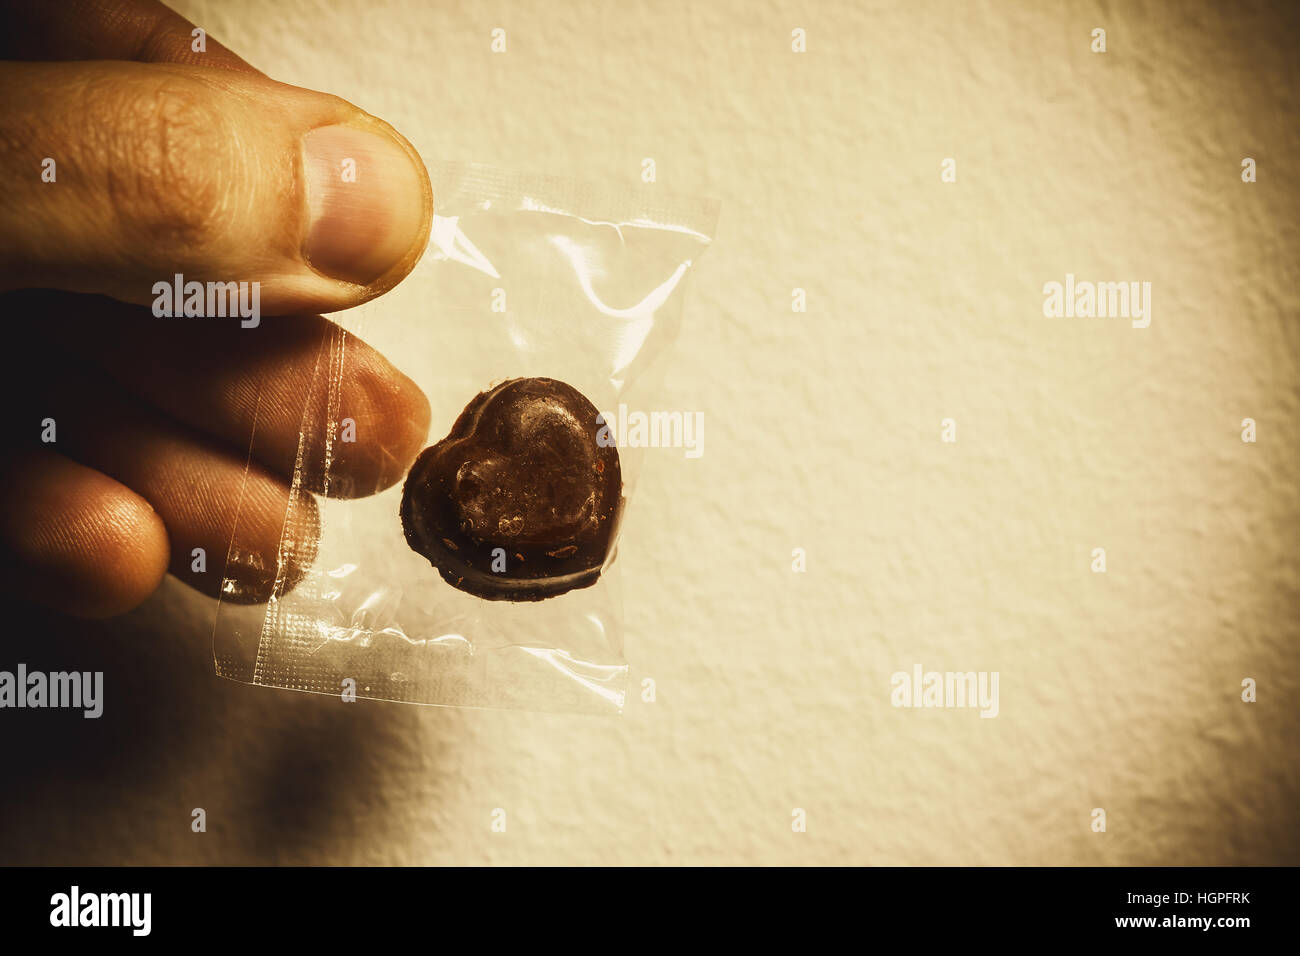 Schokoladenherz gewickelt in Plastiktüte, in der männliche Hand, konzeptuelle Komposition über Liebe geben. Stockfoto